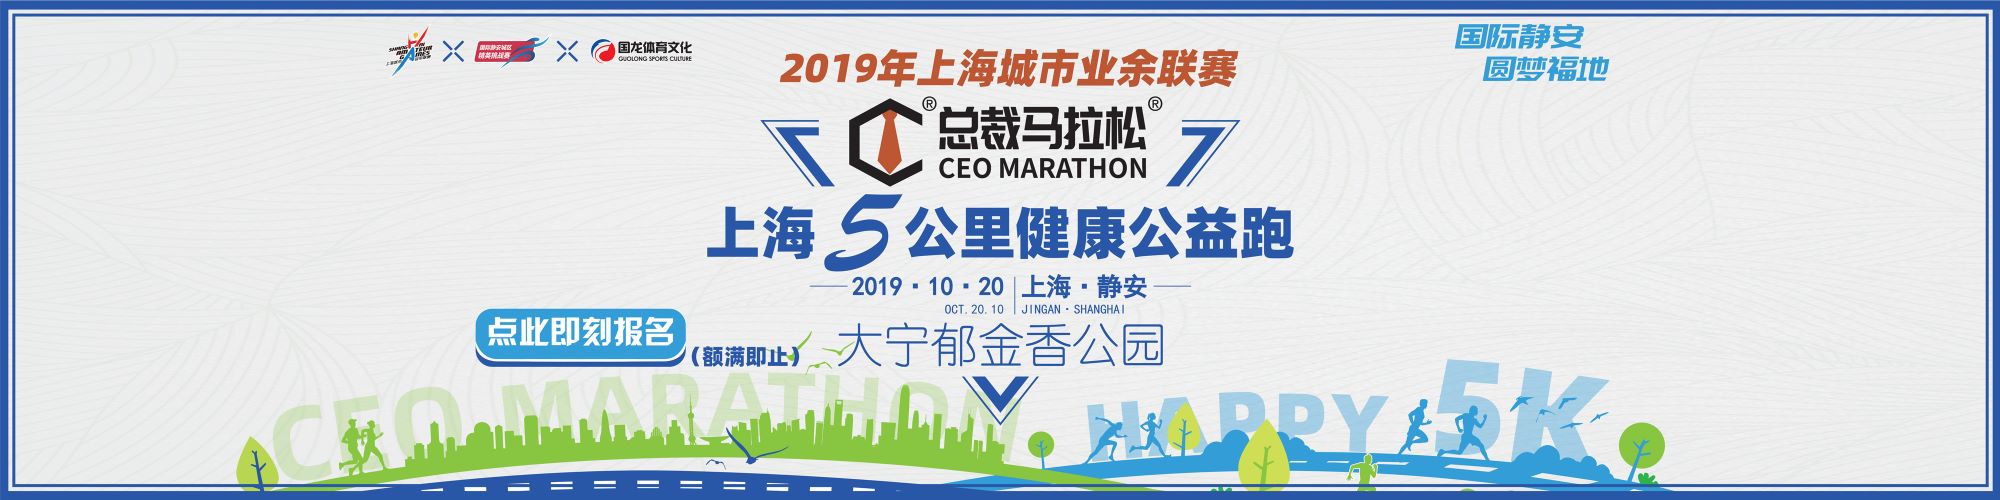 2019 总裁马拉松®上海5公里健康公益跑